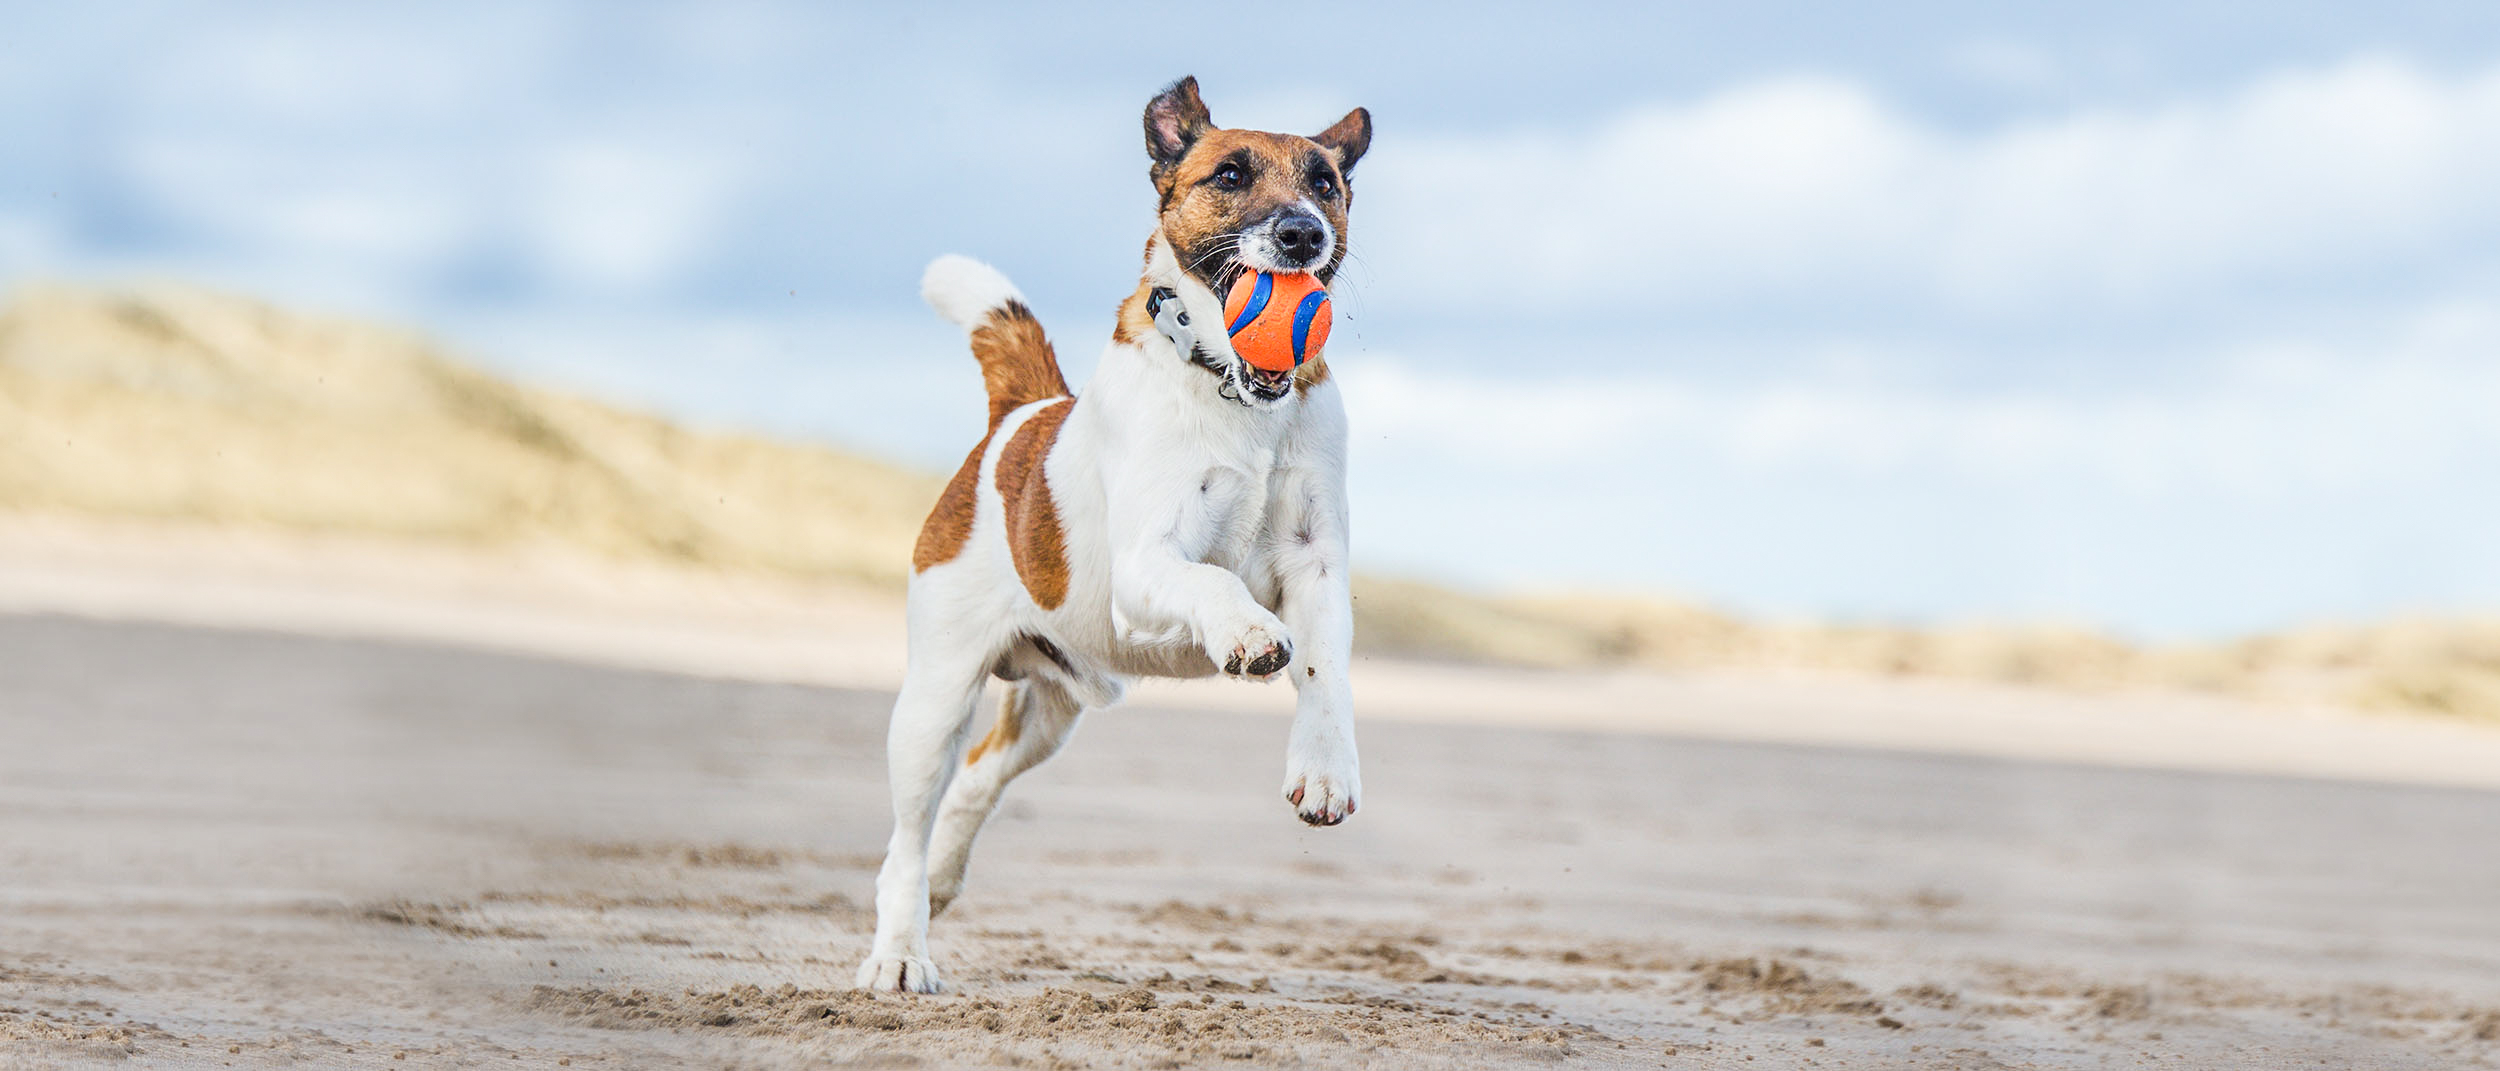  Jack Russell adulto corriendo en una playa con una pelota en la boca.